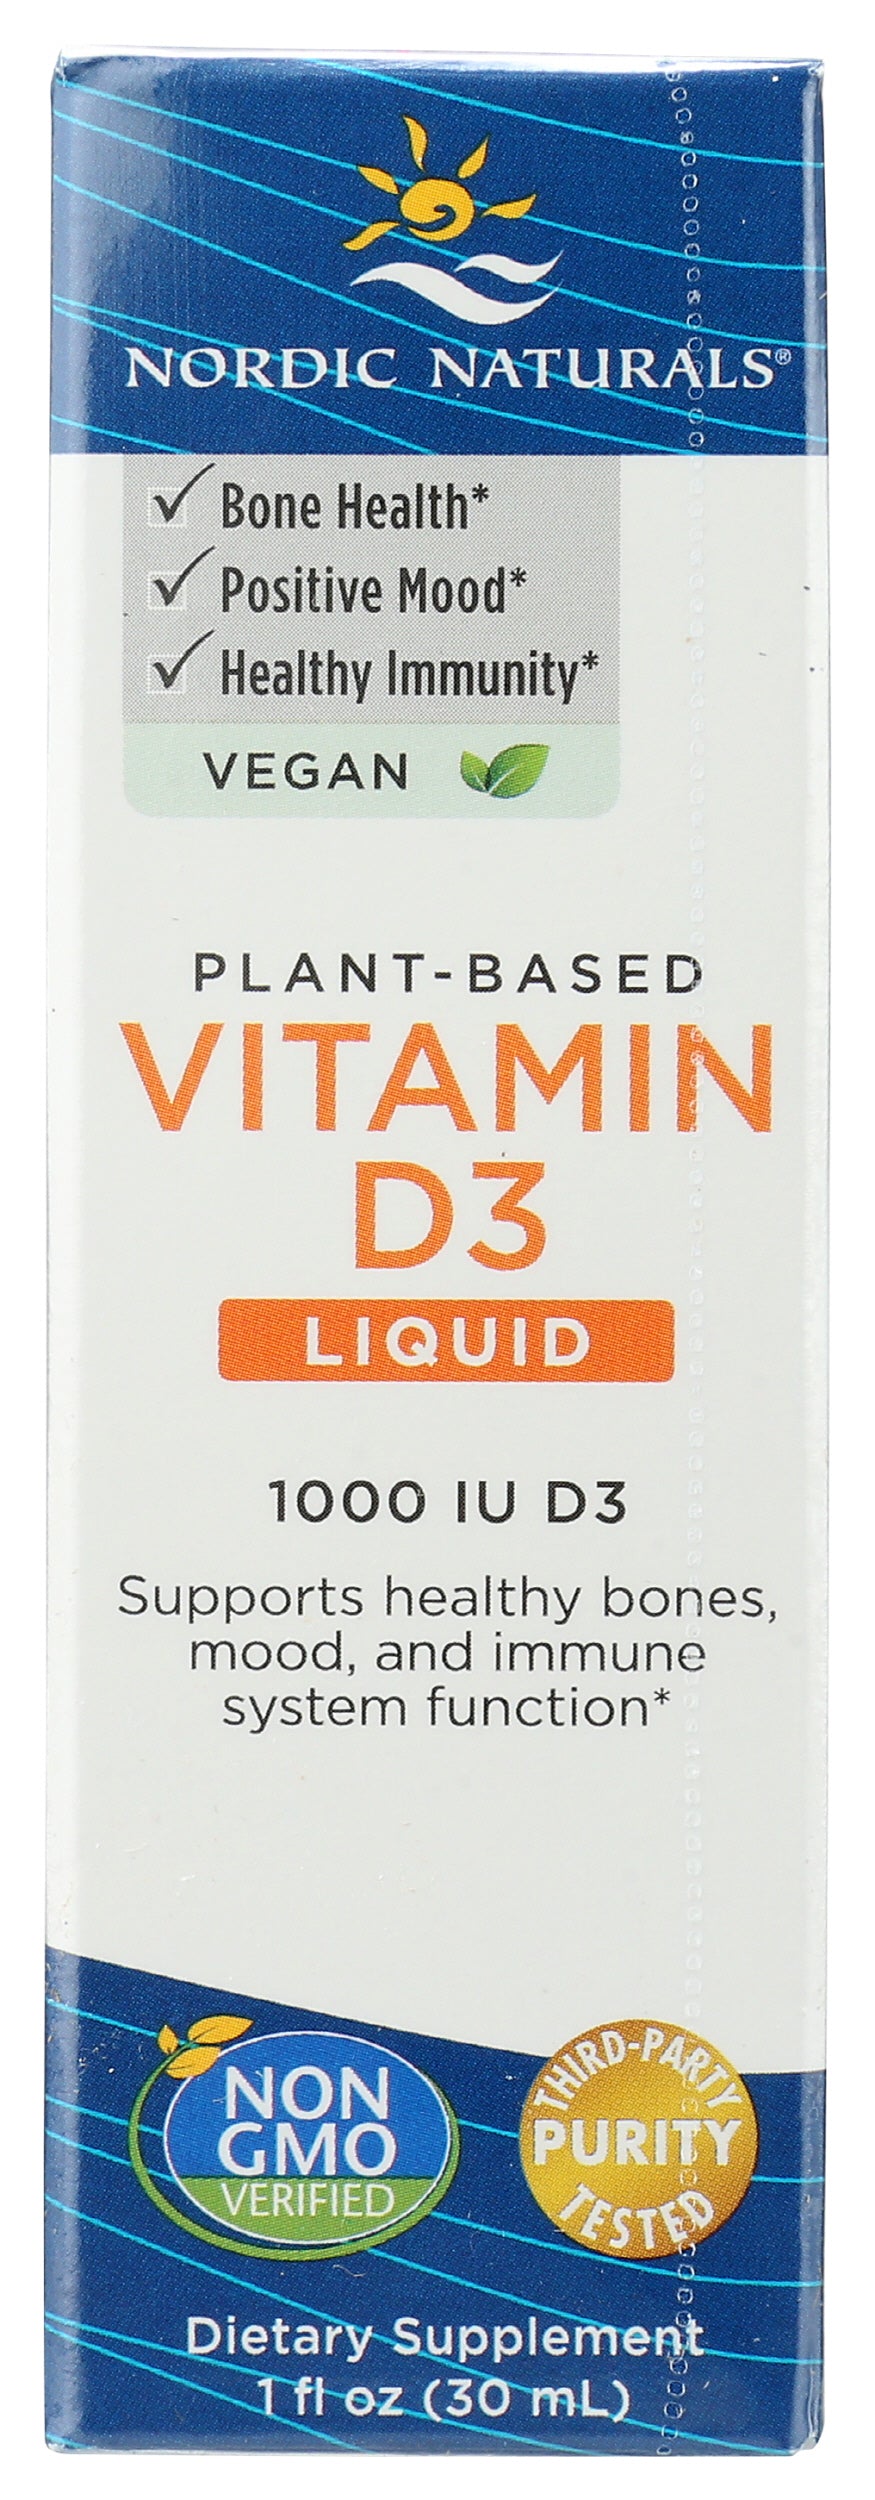 Nordic Naturals Plant Based Vitamin D3 Liquid 1,000 IU 1 Fl Oz Front of Box